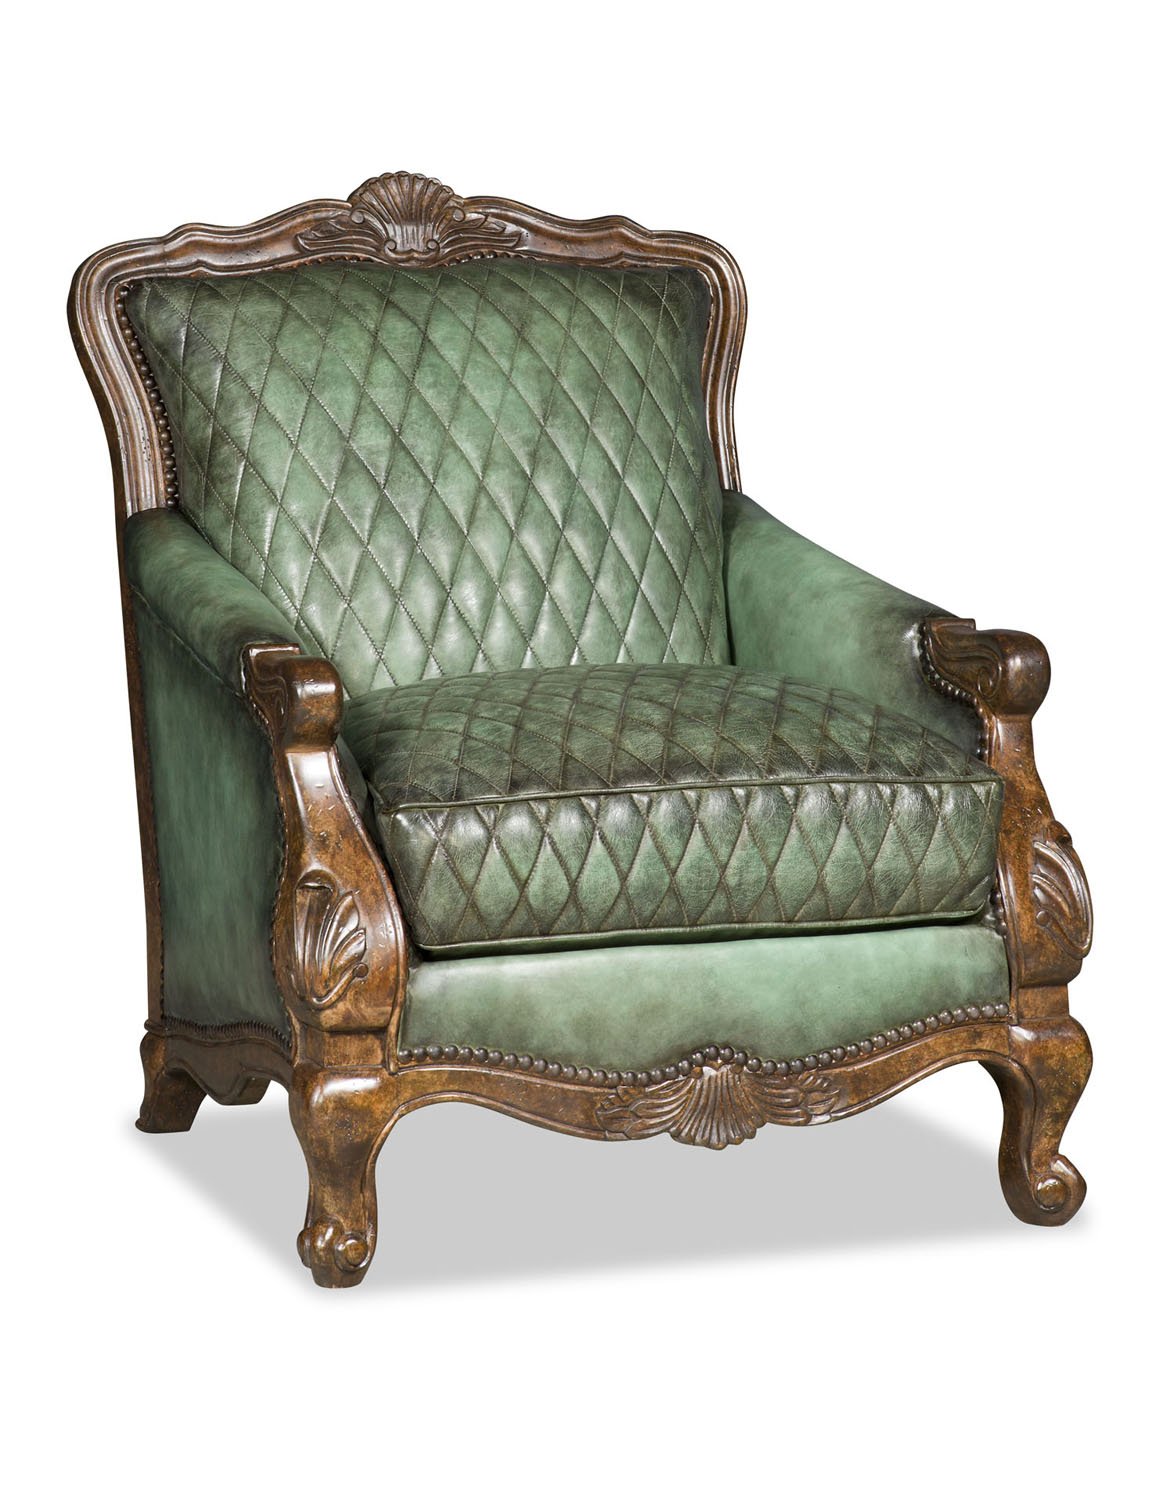 Buckley Chair in Antique Jade